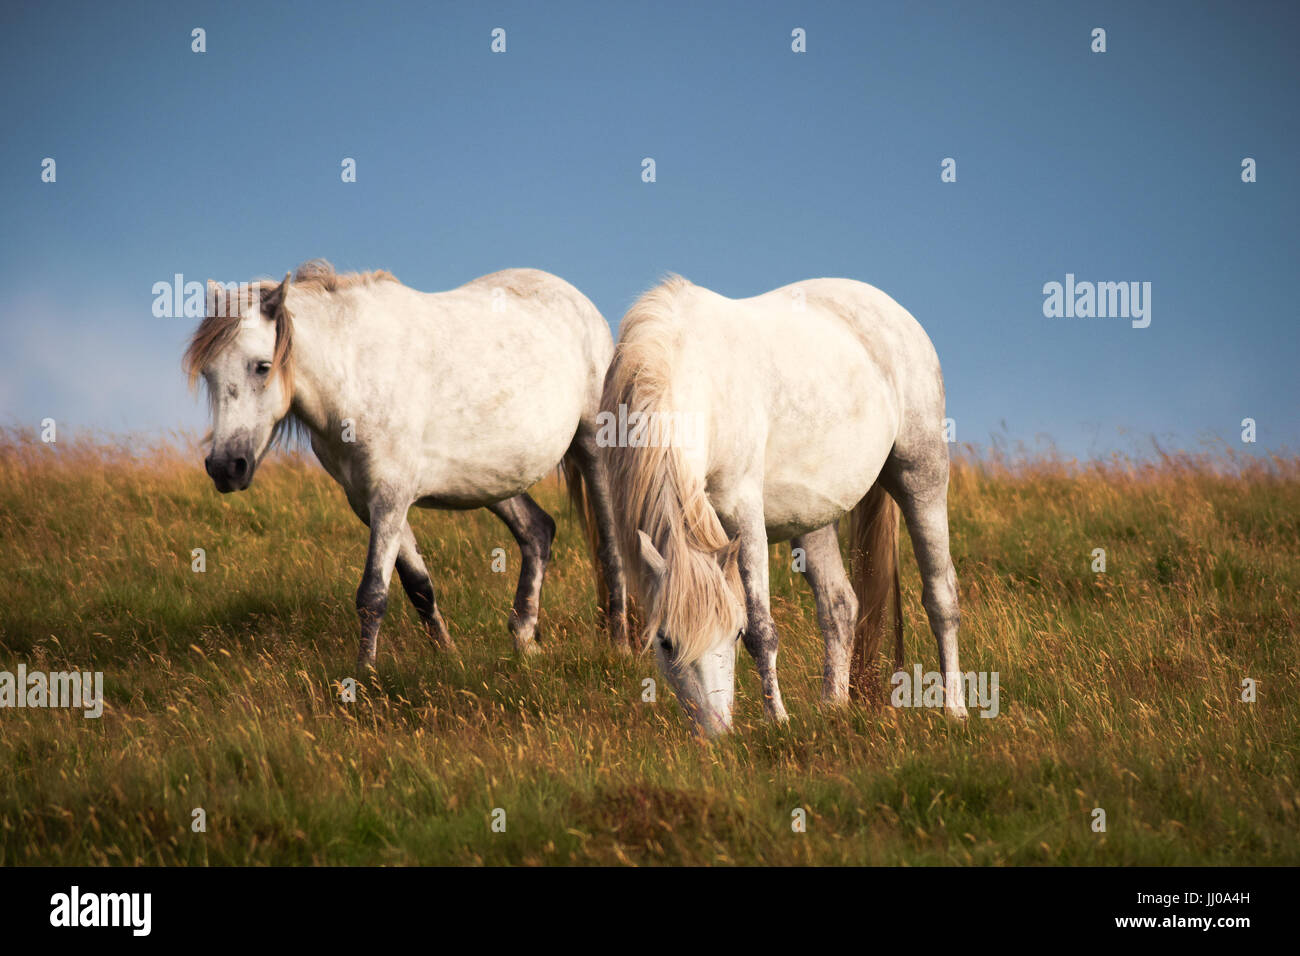 Two white wild horses of Dartmoor Stock Photo